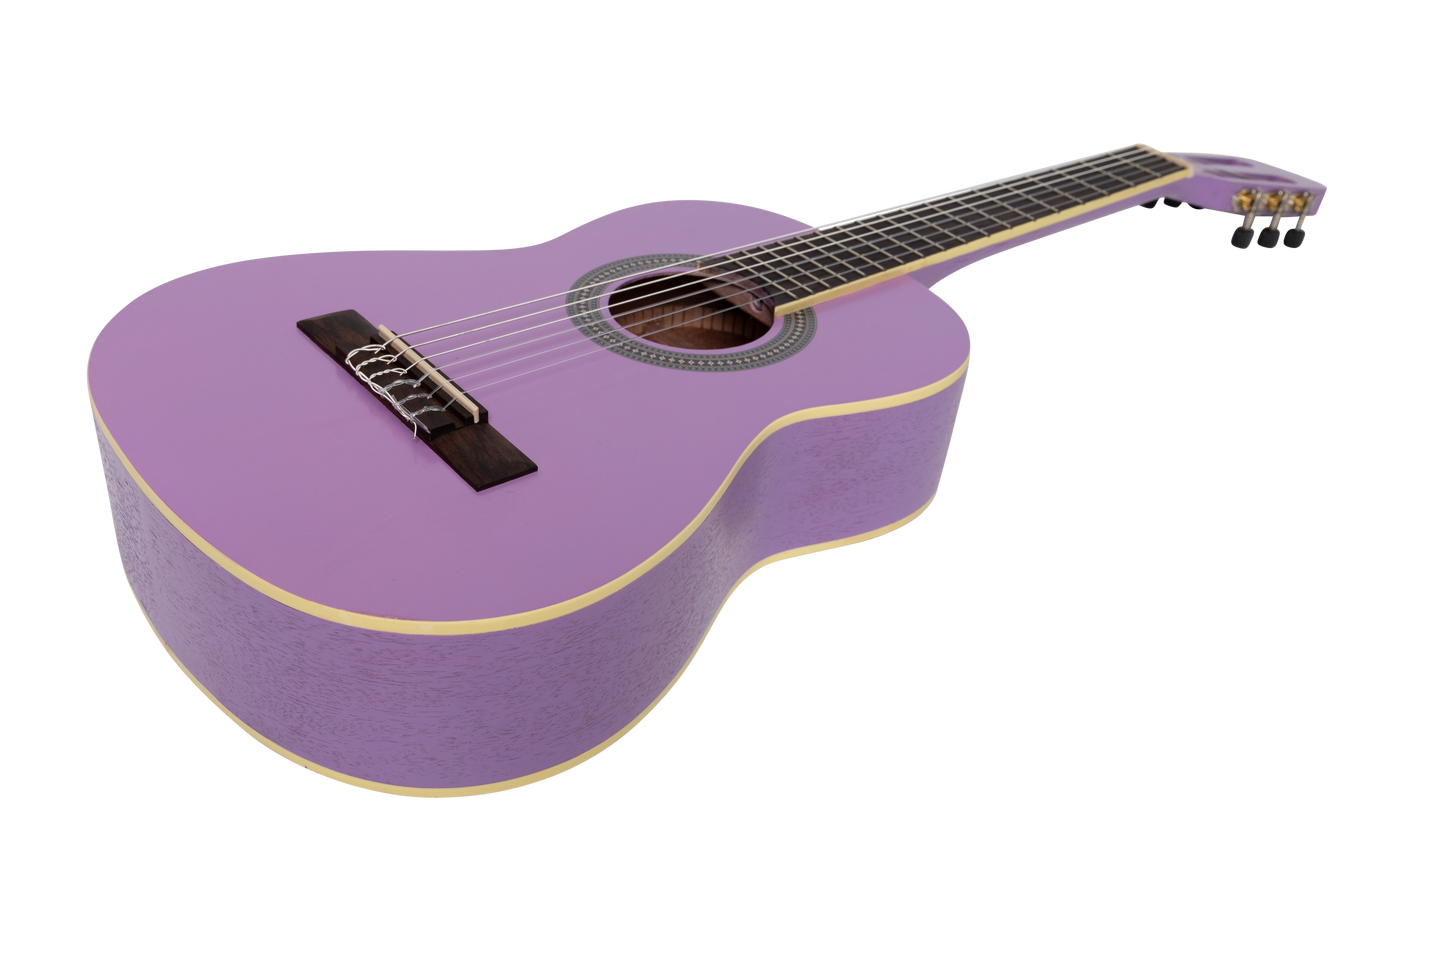 Sanchez 1/2 Size Student Classical Guitar Pack (Purple)